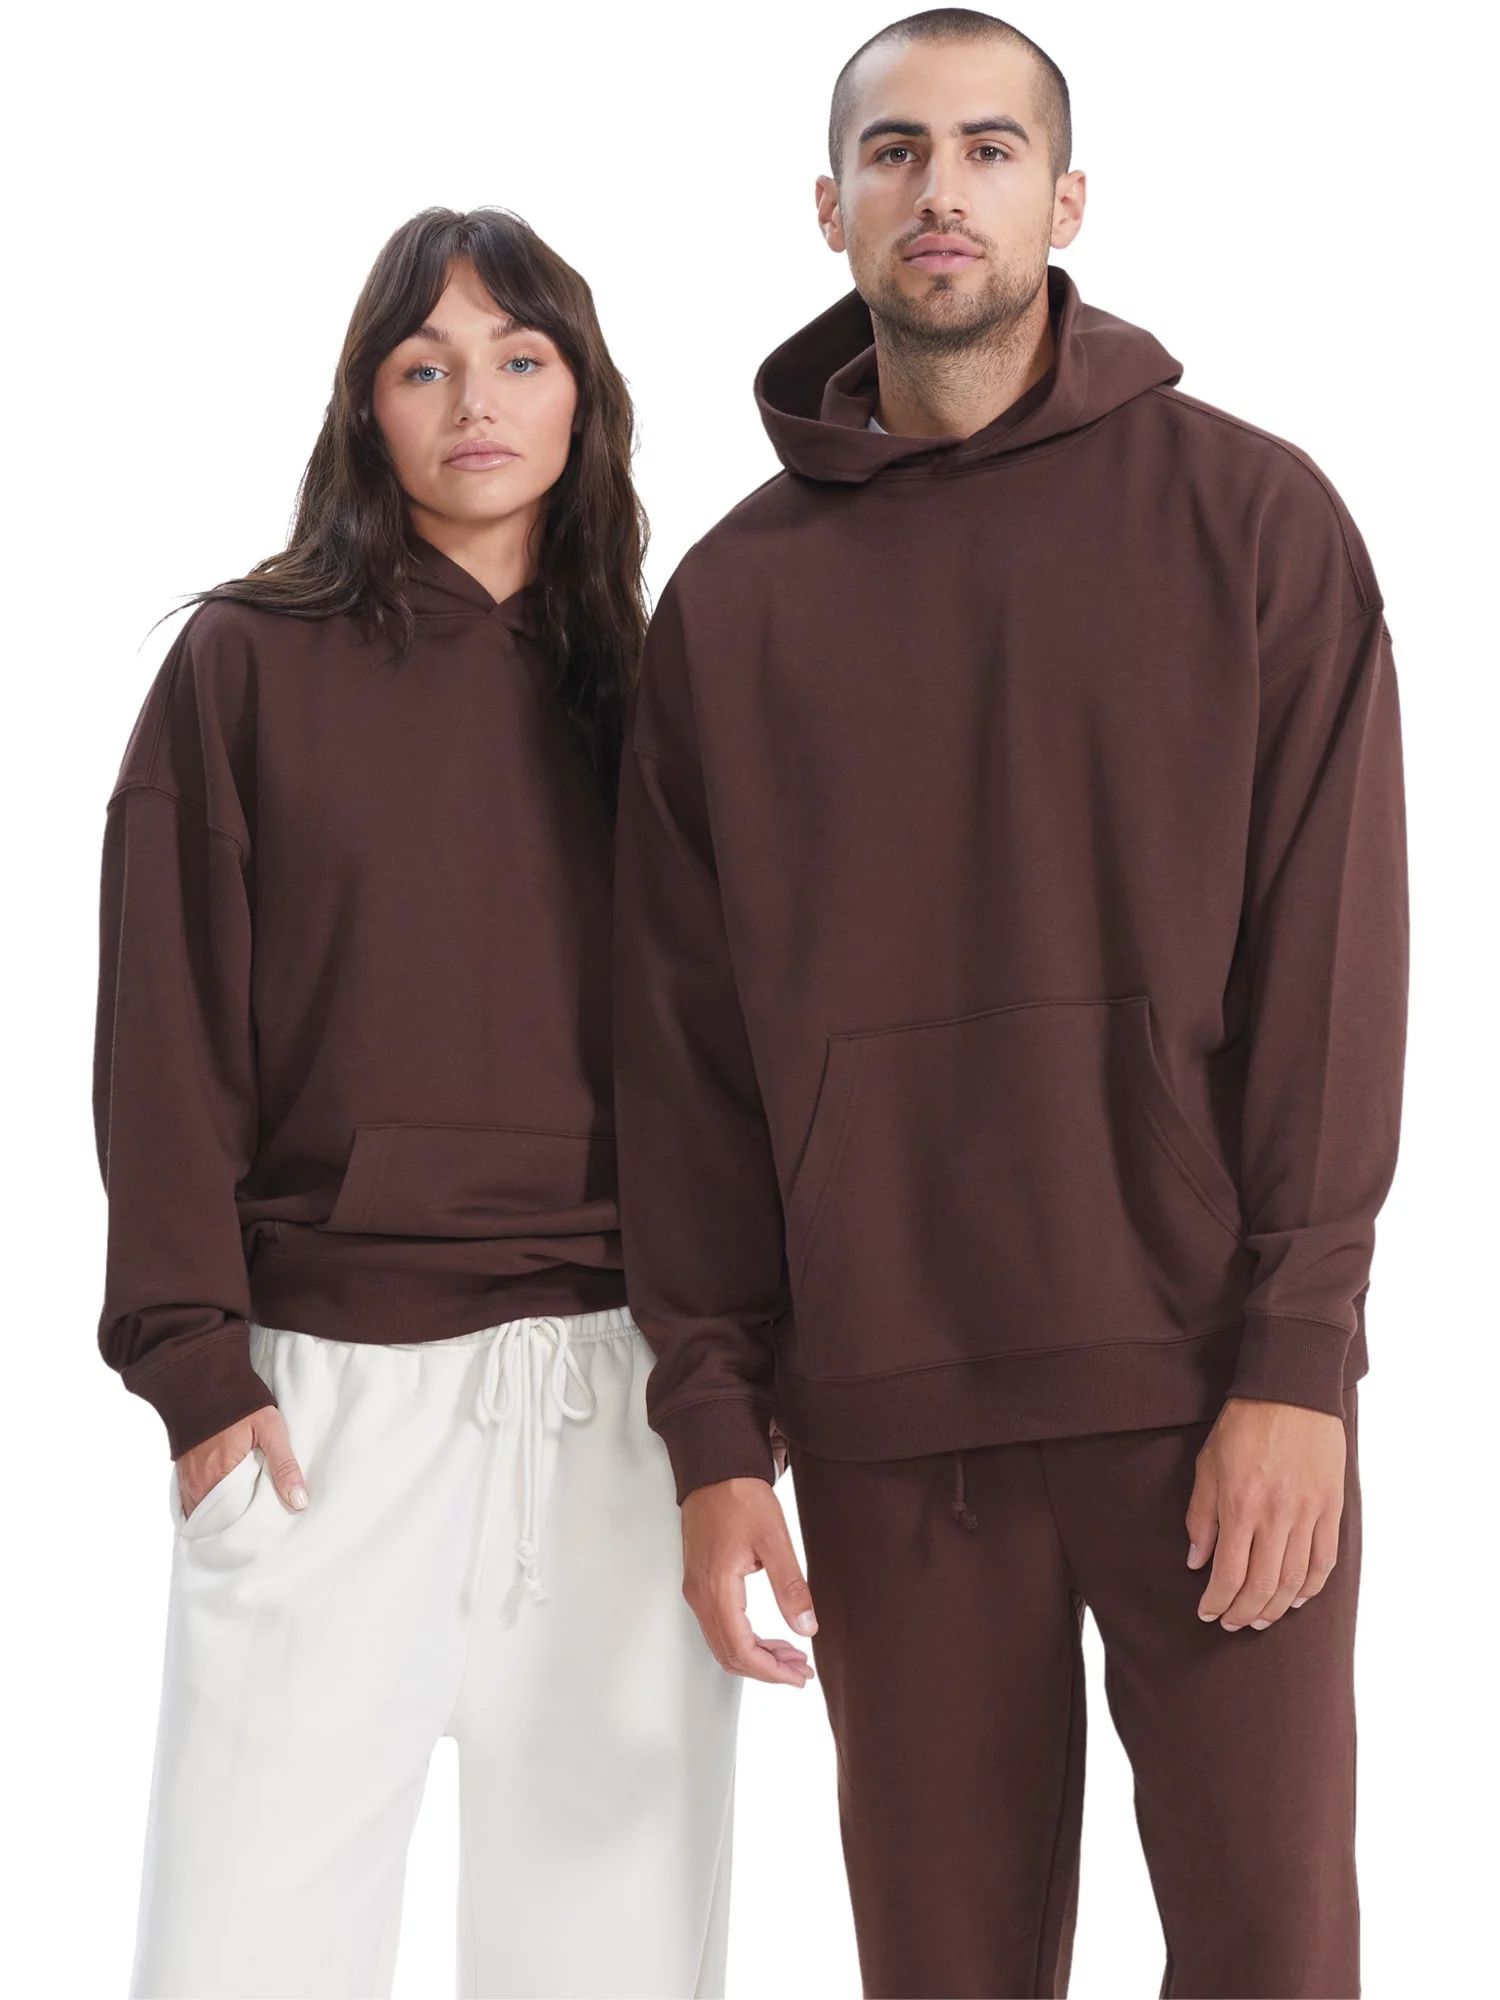 No Boundaries All Gender Oversize Hoodie Sweatshirt, Men's Sizes XS - 3XL | Walmart (US)